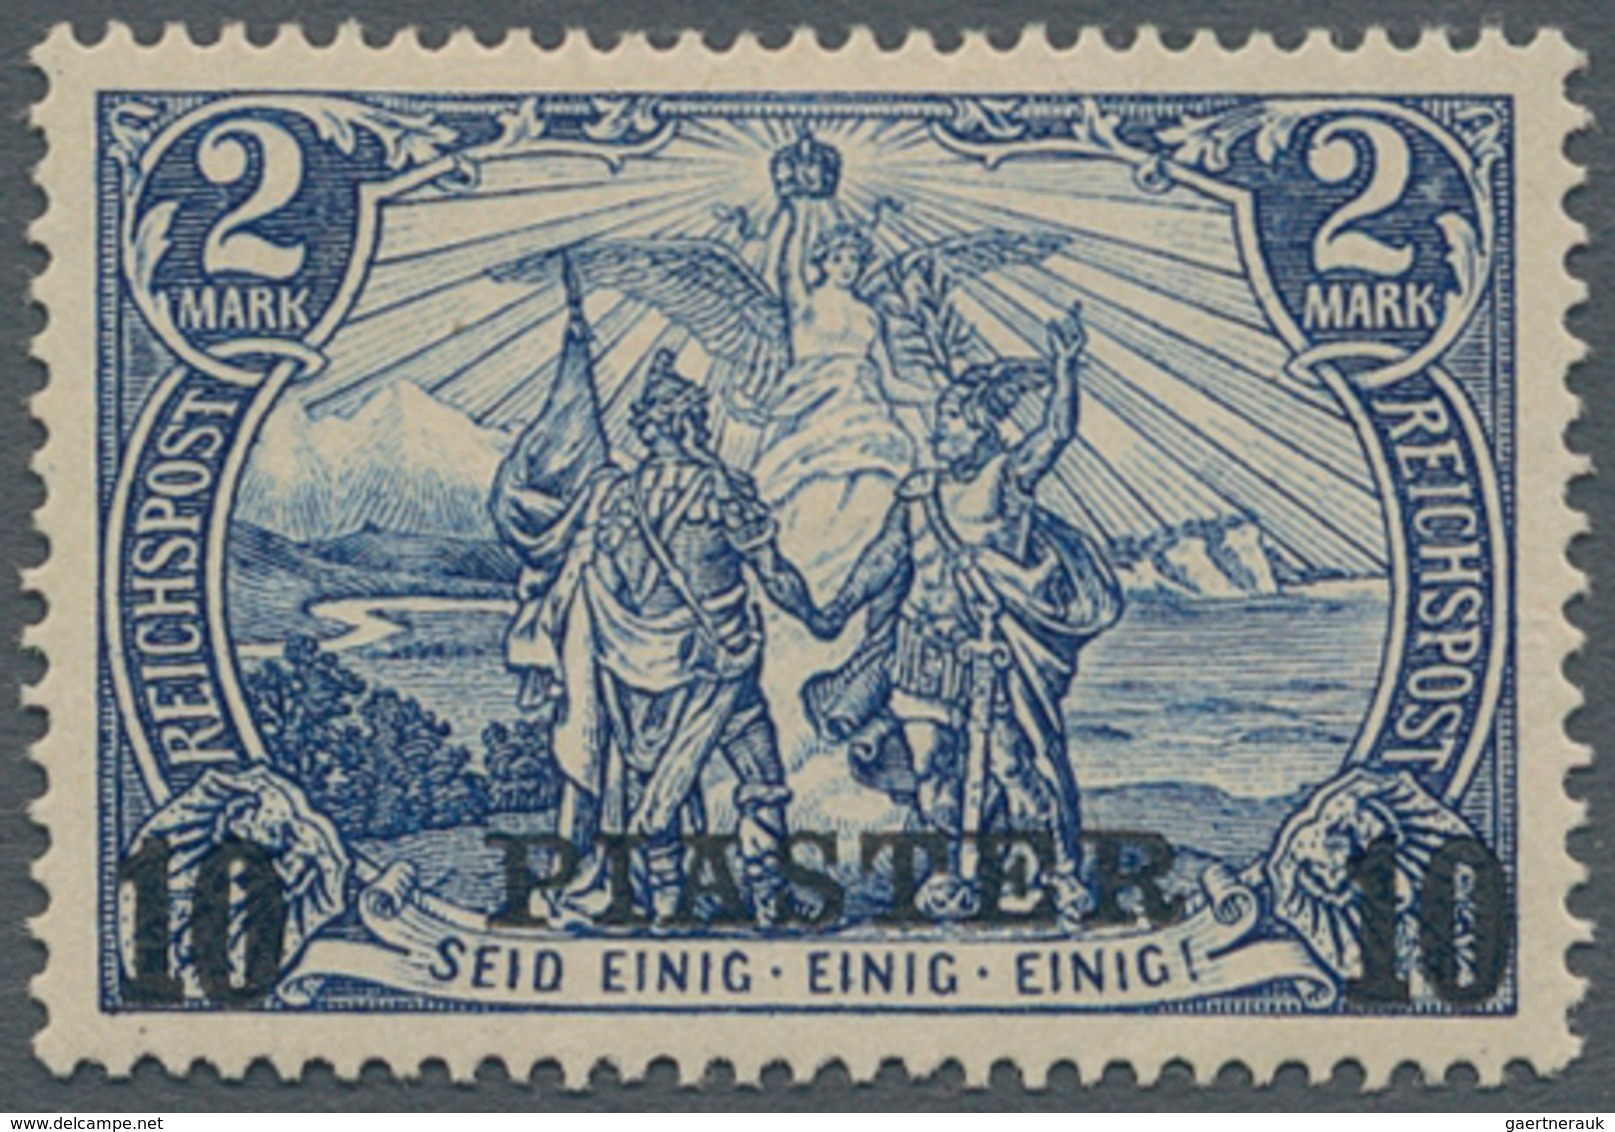 Deutsche Post In Der Türkei: 1900, 10 Pia Auf 2 Mark Type Ii Ungebraucht Mit Falz, Fehlerfrei, Geprü - Turkey (offices)